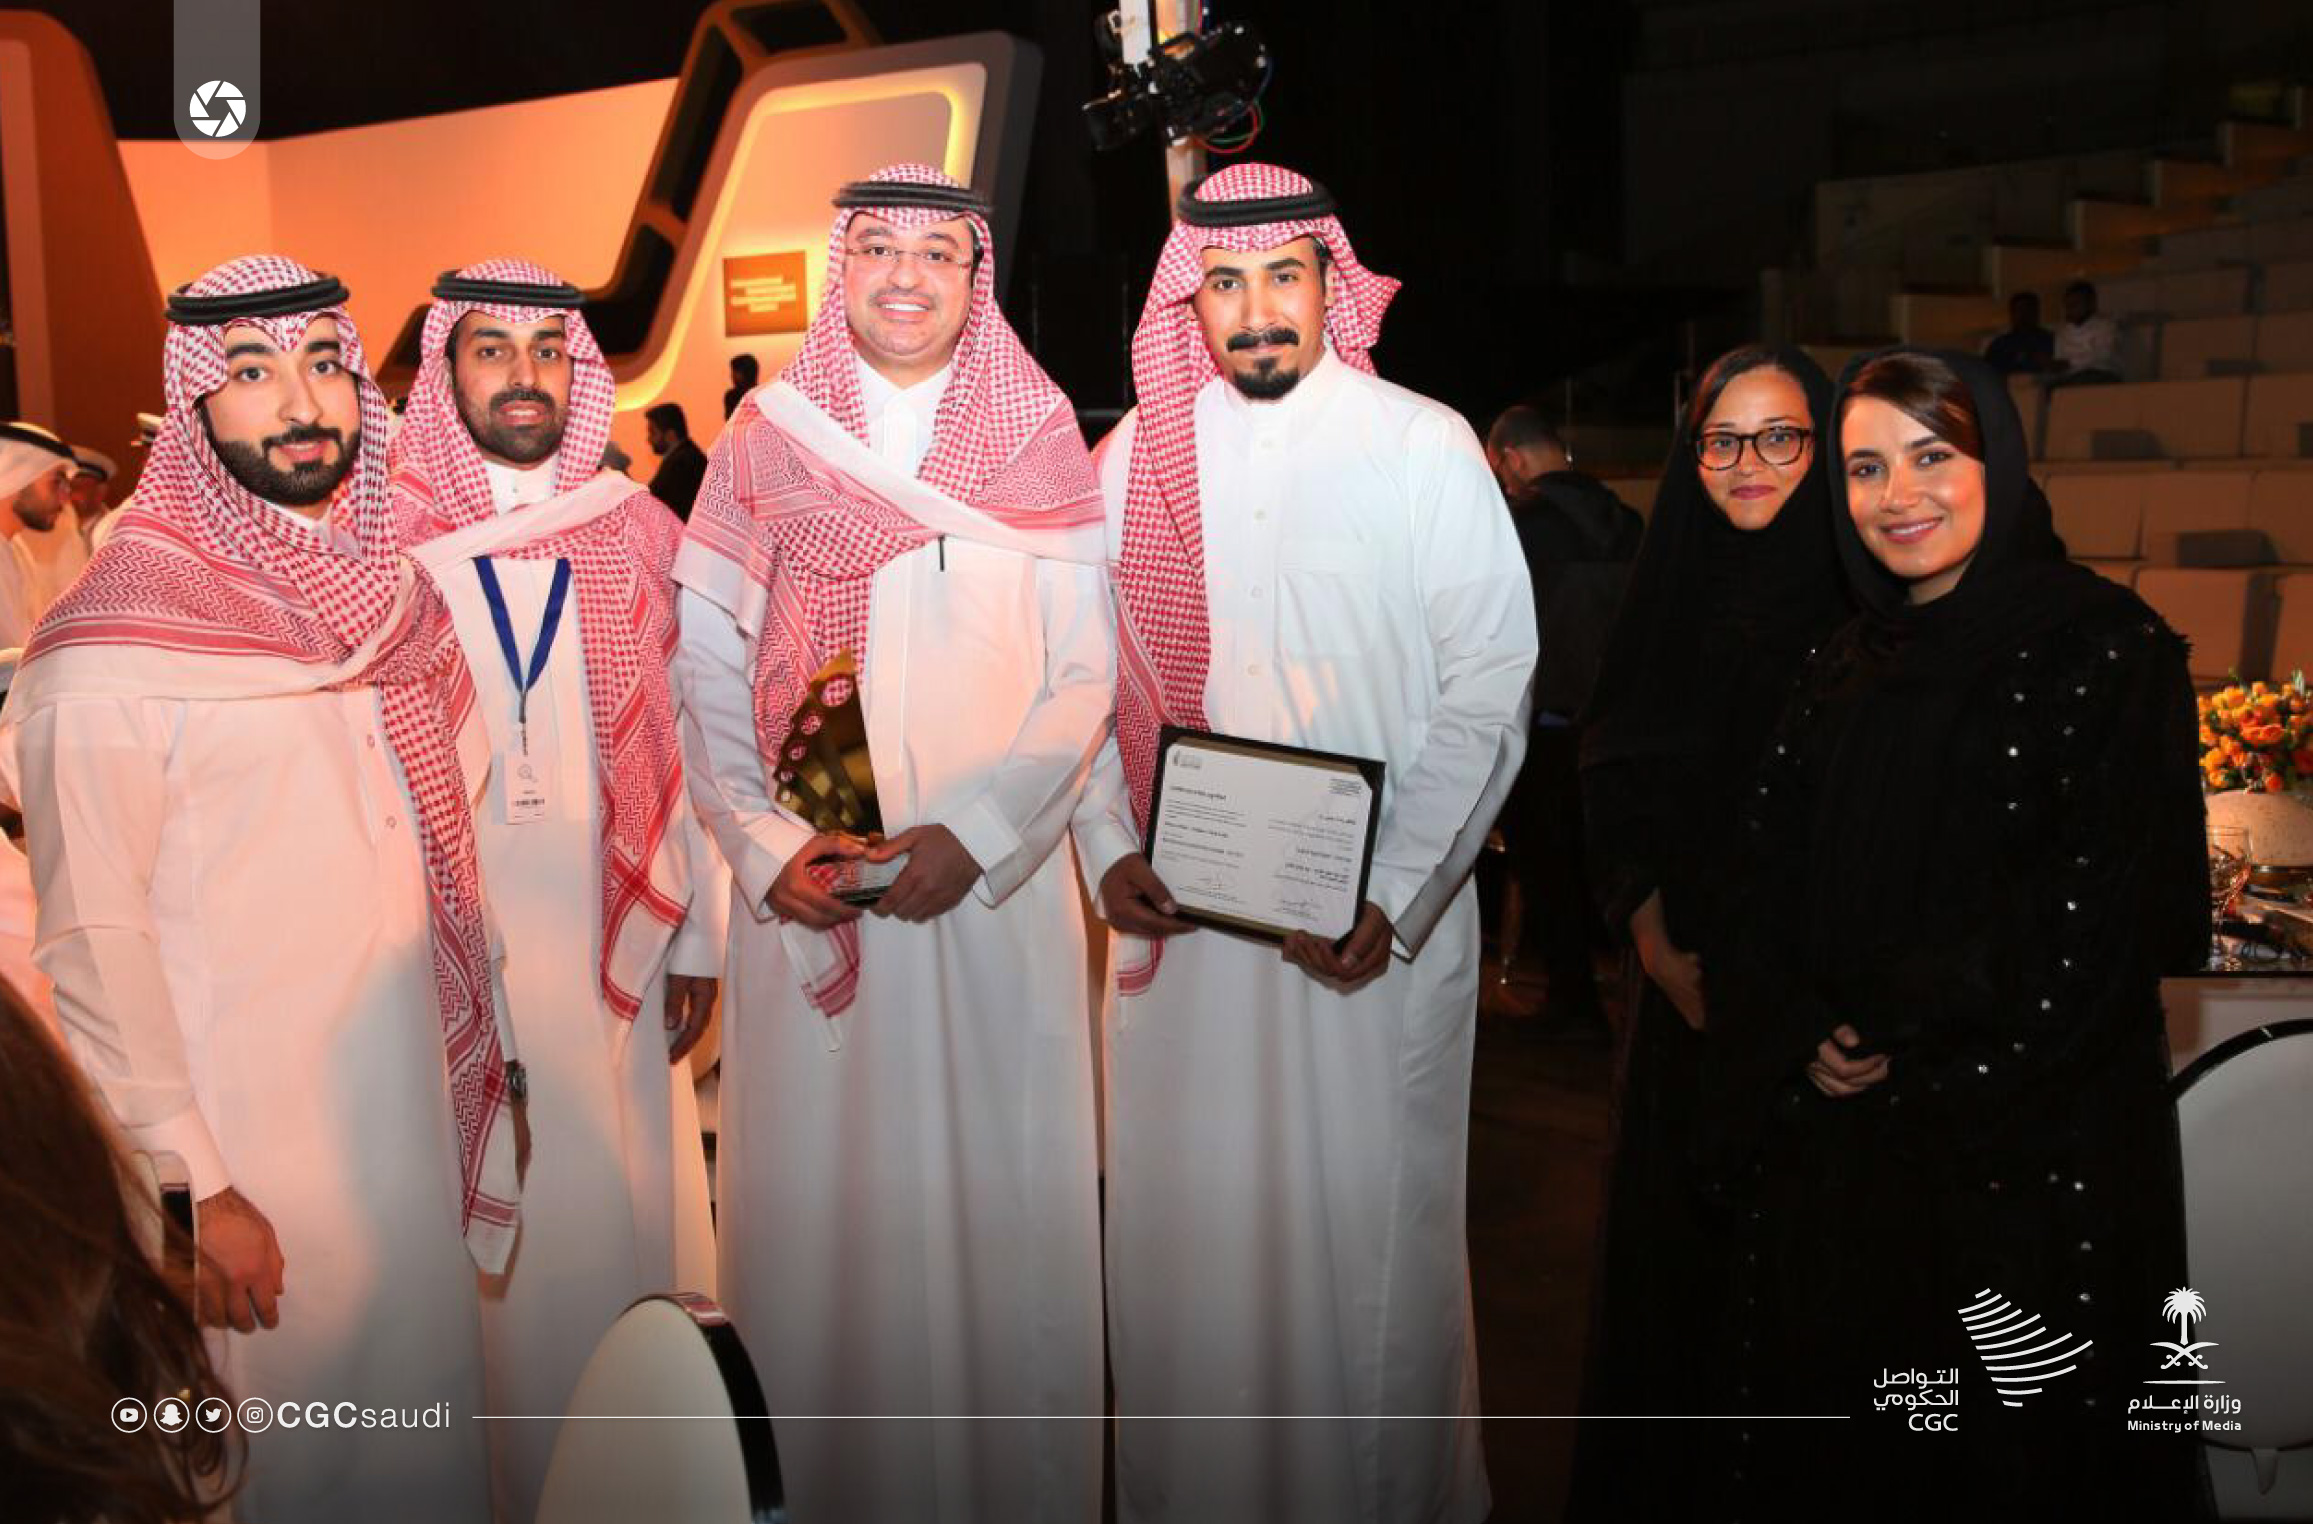 نائب حاكم الشارقة يتوج التواصل الحكومي بجائزة أفضل حملة رسمية على مستوى الخليج